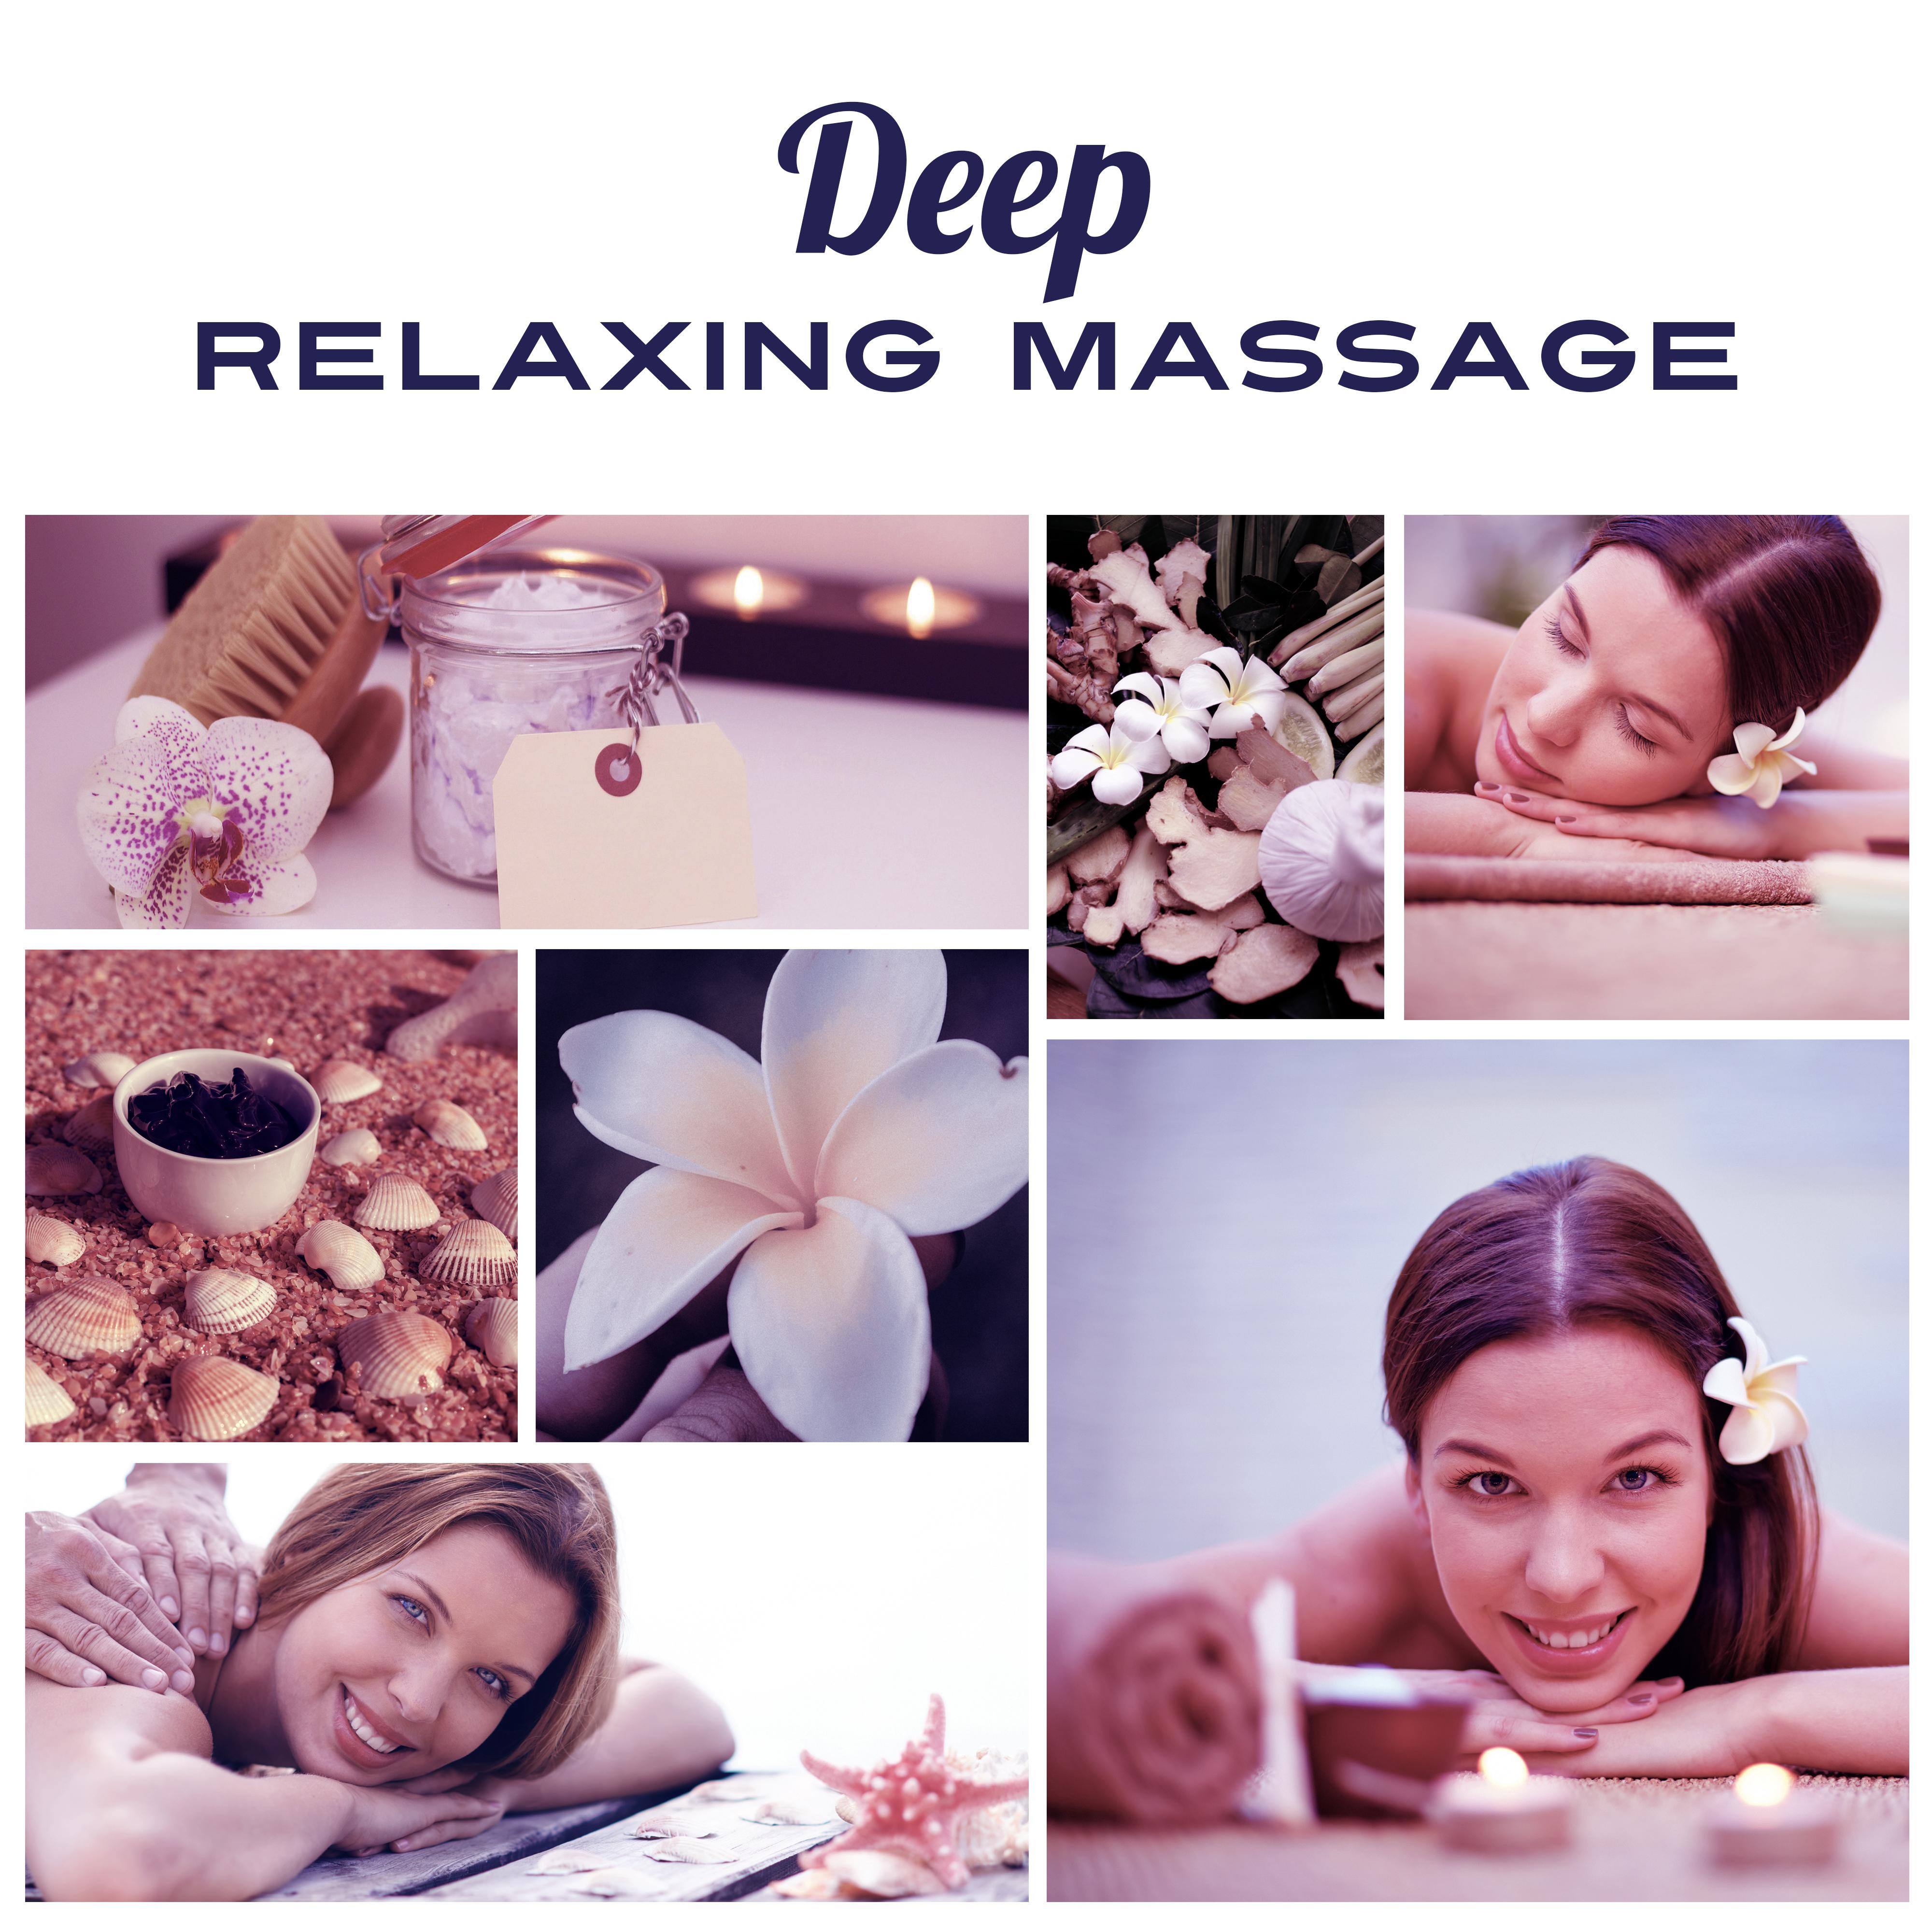 Deep Relaxing Massage – Peaceful Sounds of Nature, Calm Down, Rest, Relax, Massage Music, Wellness